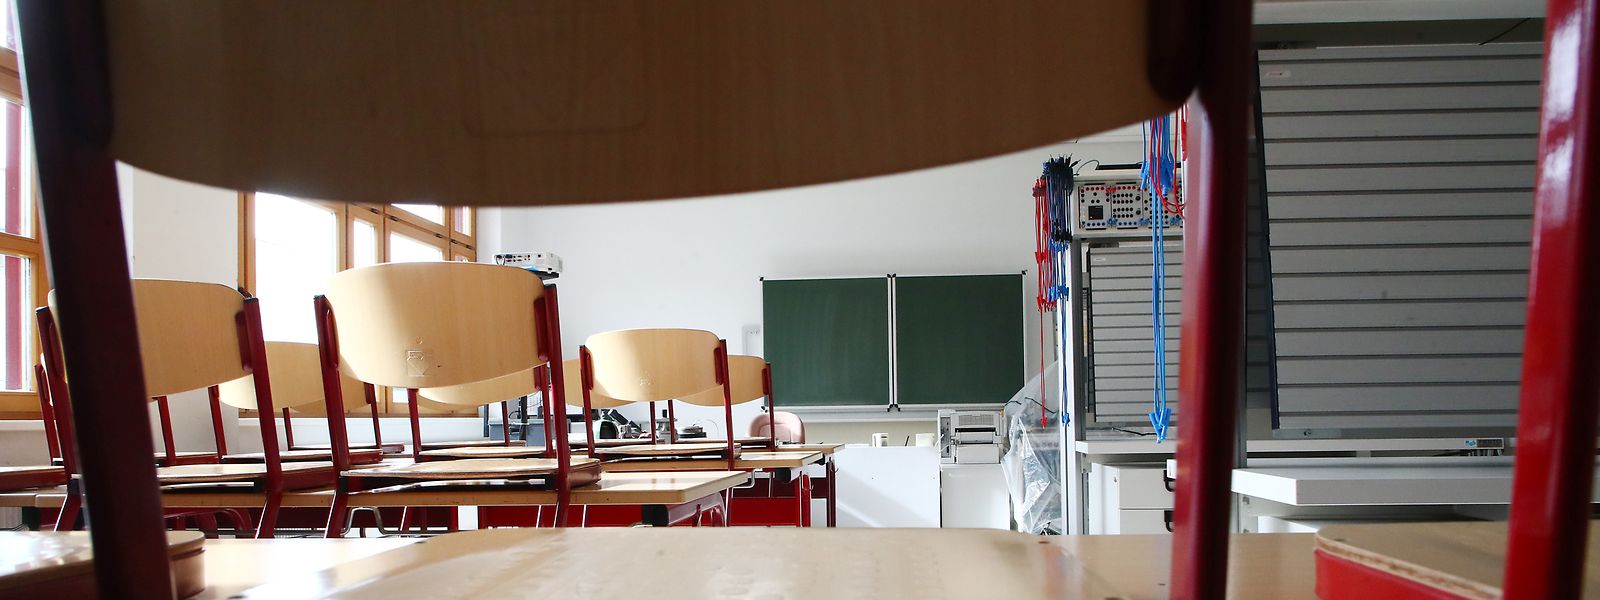 Ab Ende November bleiben viele Klassenzimmer in den Sekundarschulen wieder leer. 